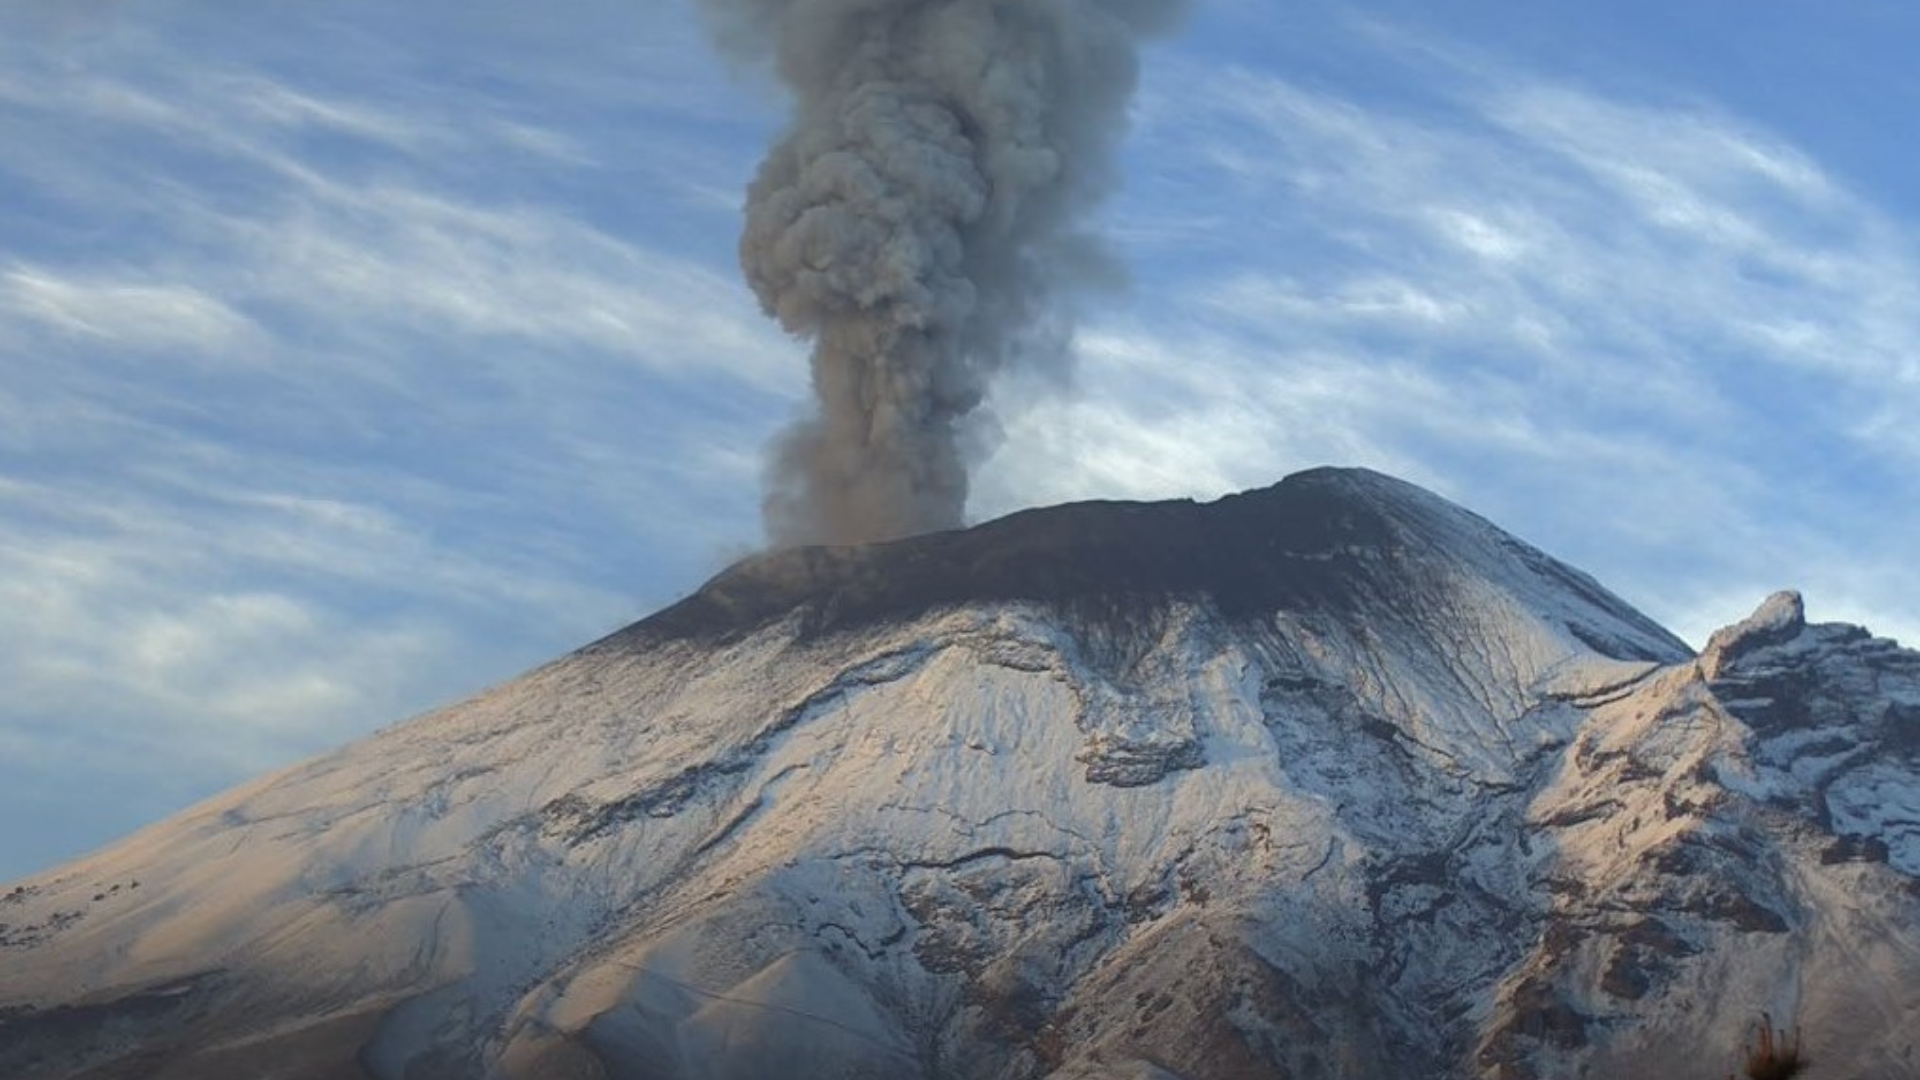 Volcán Popocatépetl hoy 23 de mayo: persisten emisiones de vapor y gas con bajo contenido de ceniza